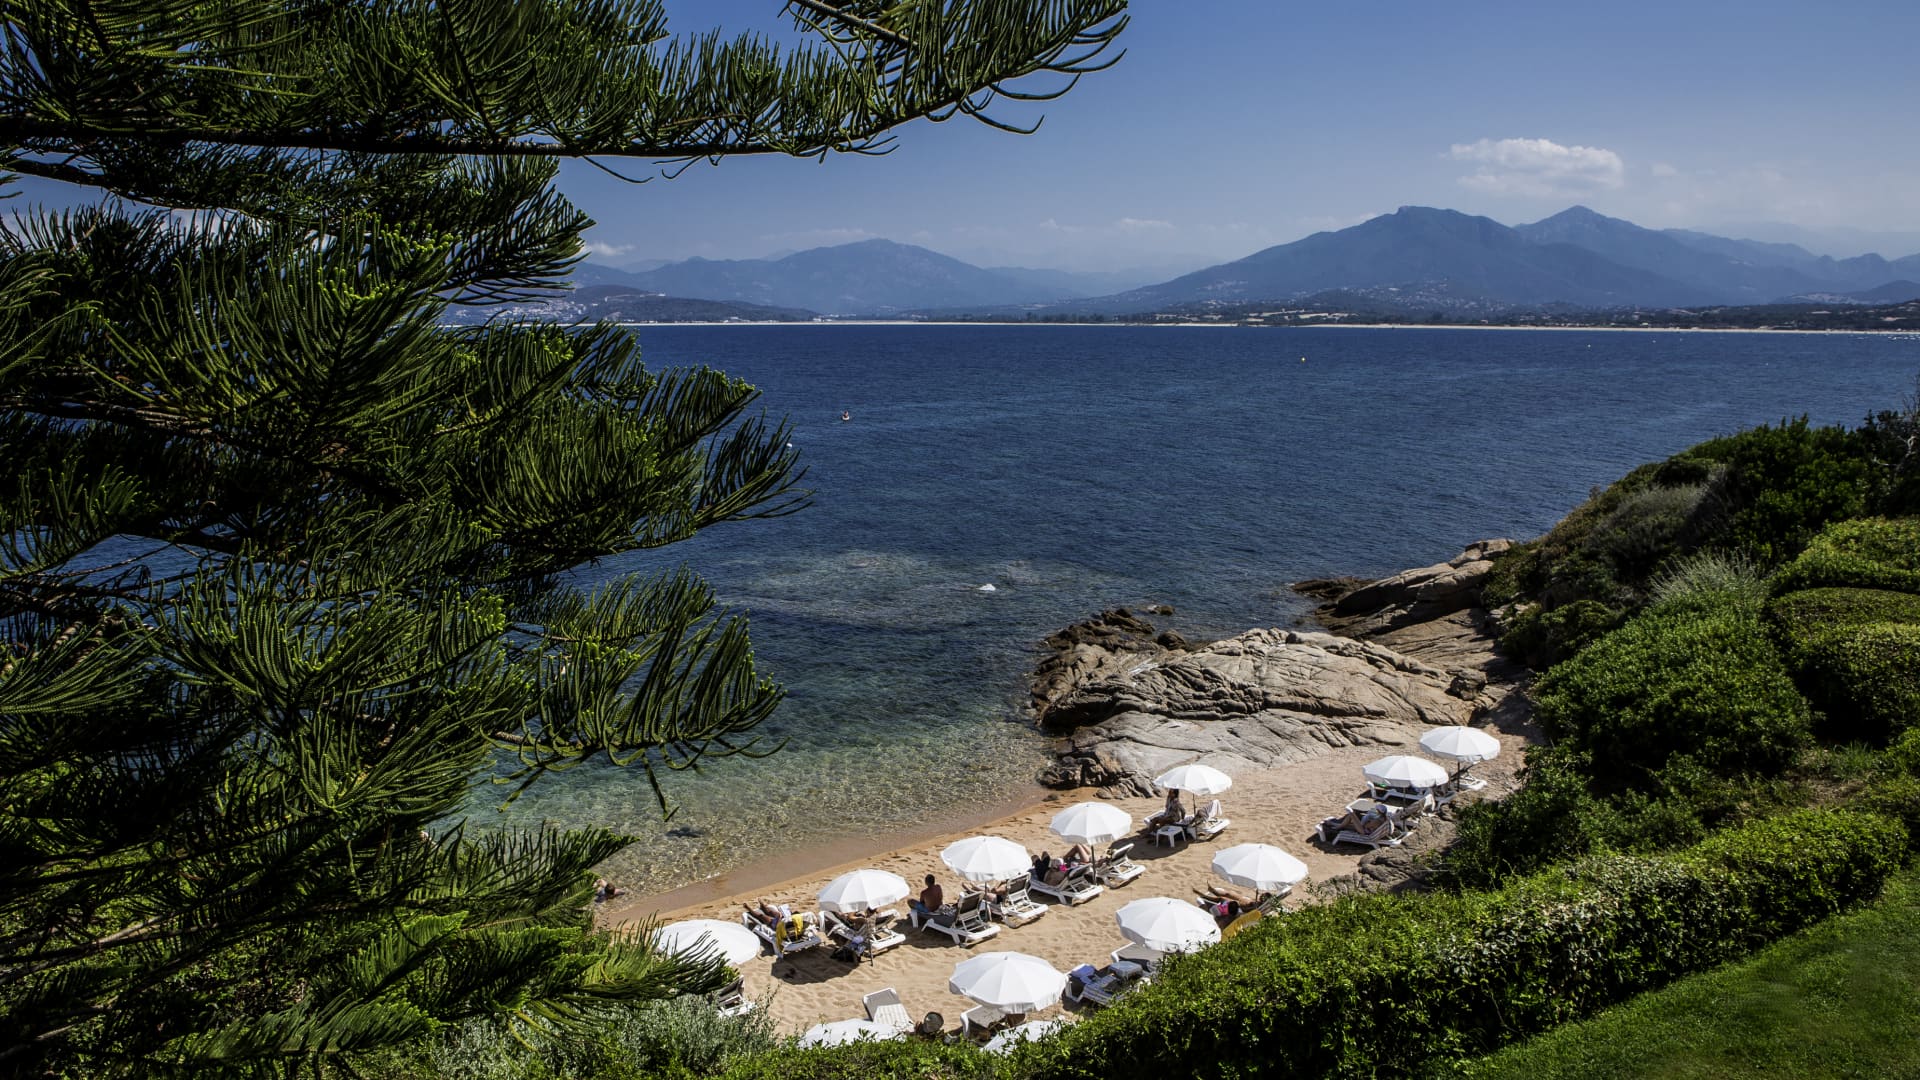 The Sofitel Golfe d'Ajaccio Thalassa Sea and Spa hotel, located in southern Corsica.